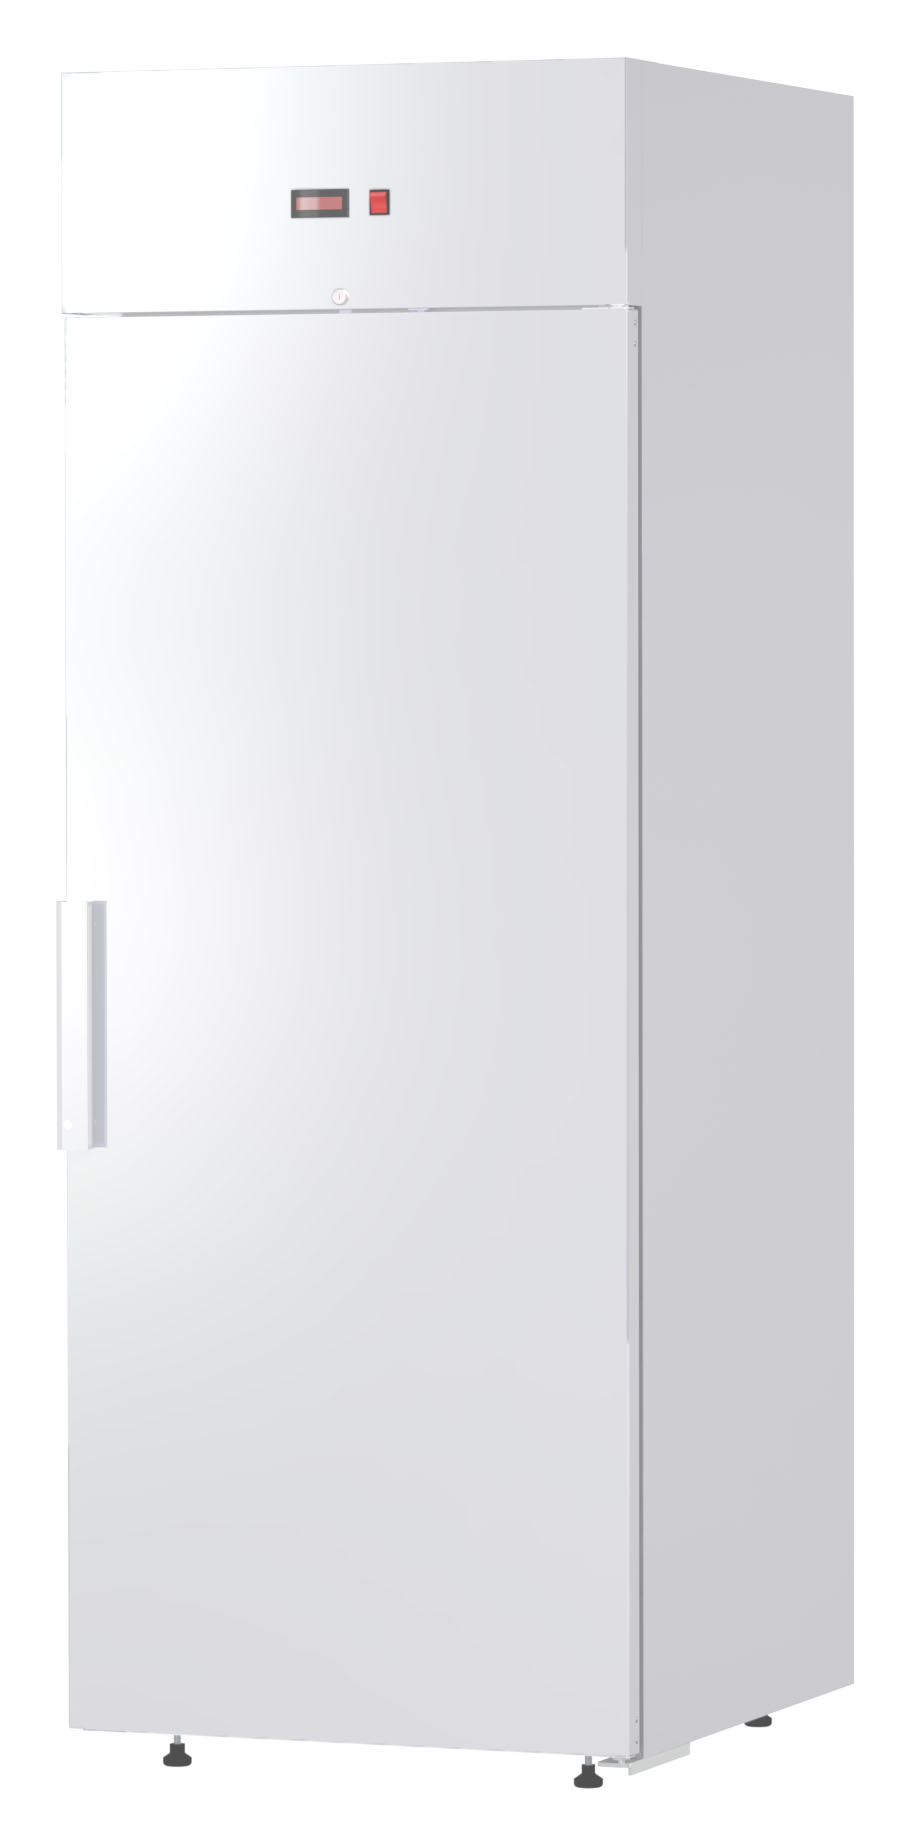 Шкаф холодильный F0.5-S